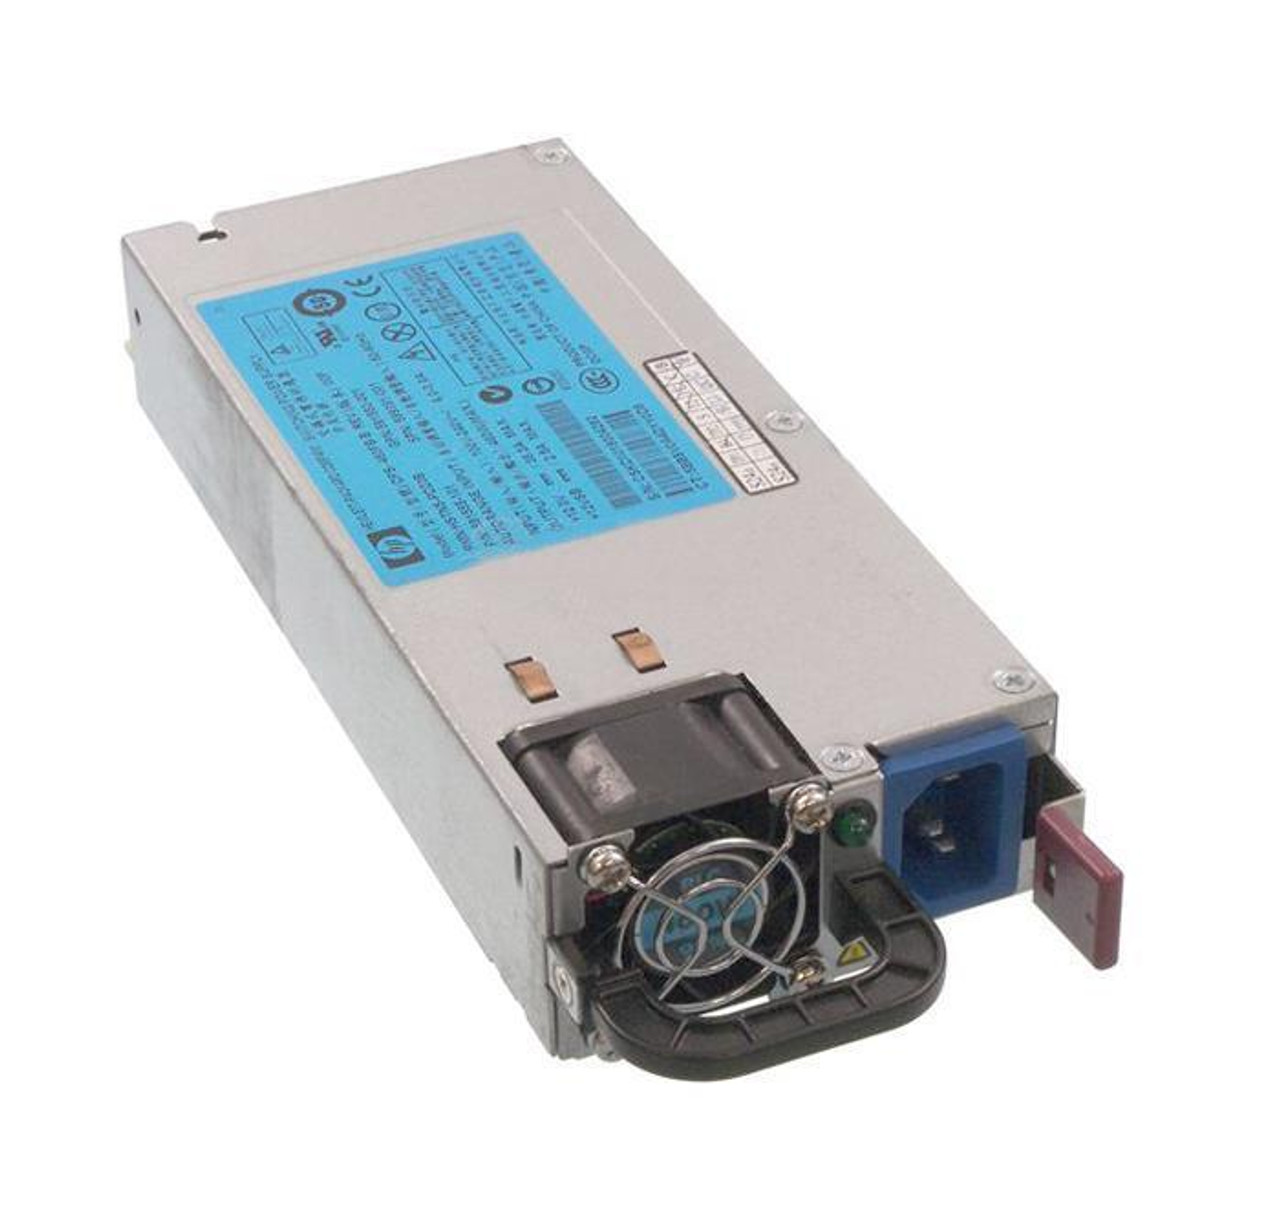 HSTNS-PL23 HP 460-Watts 12V Common Slot Redundant Power Supply for ProLiant DL380 G6 Server